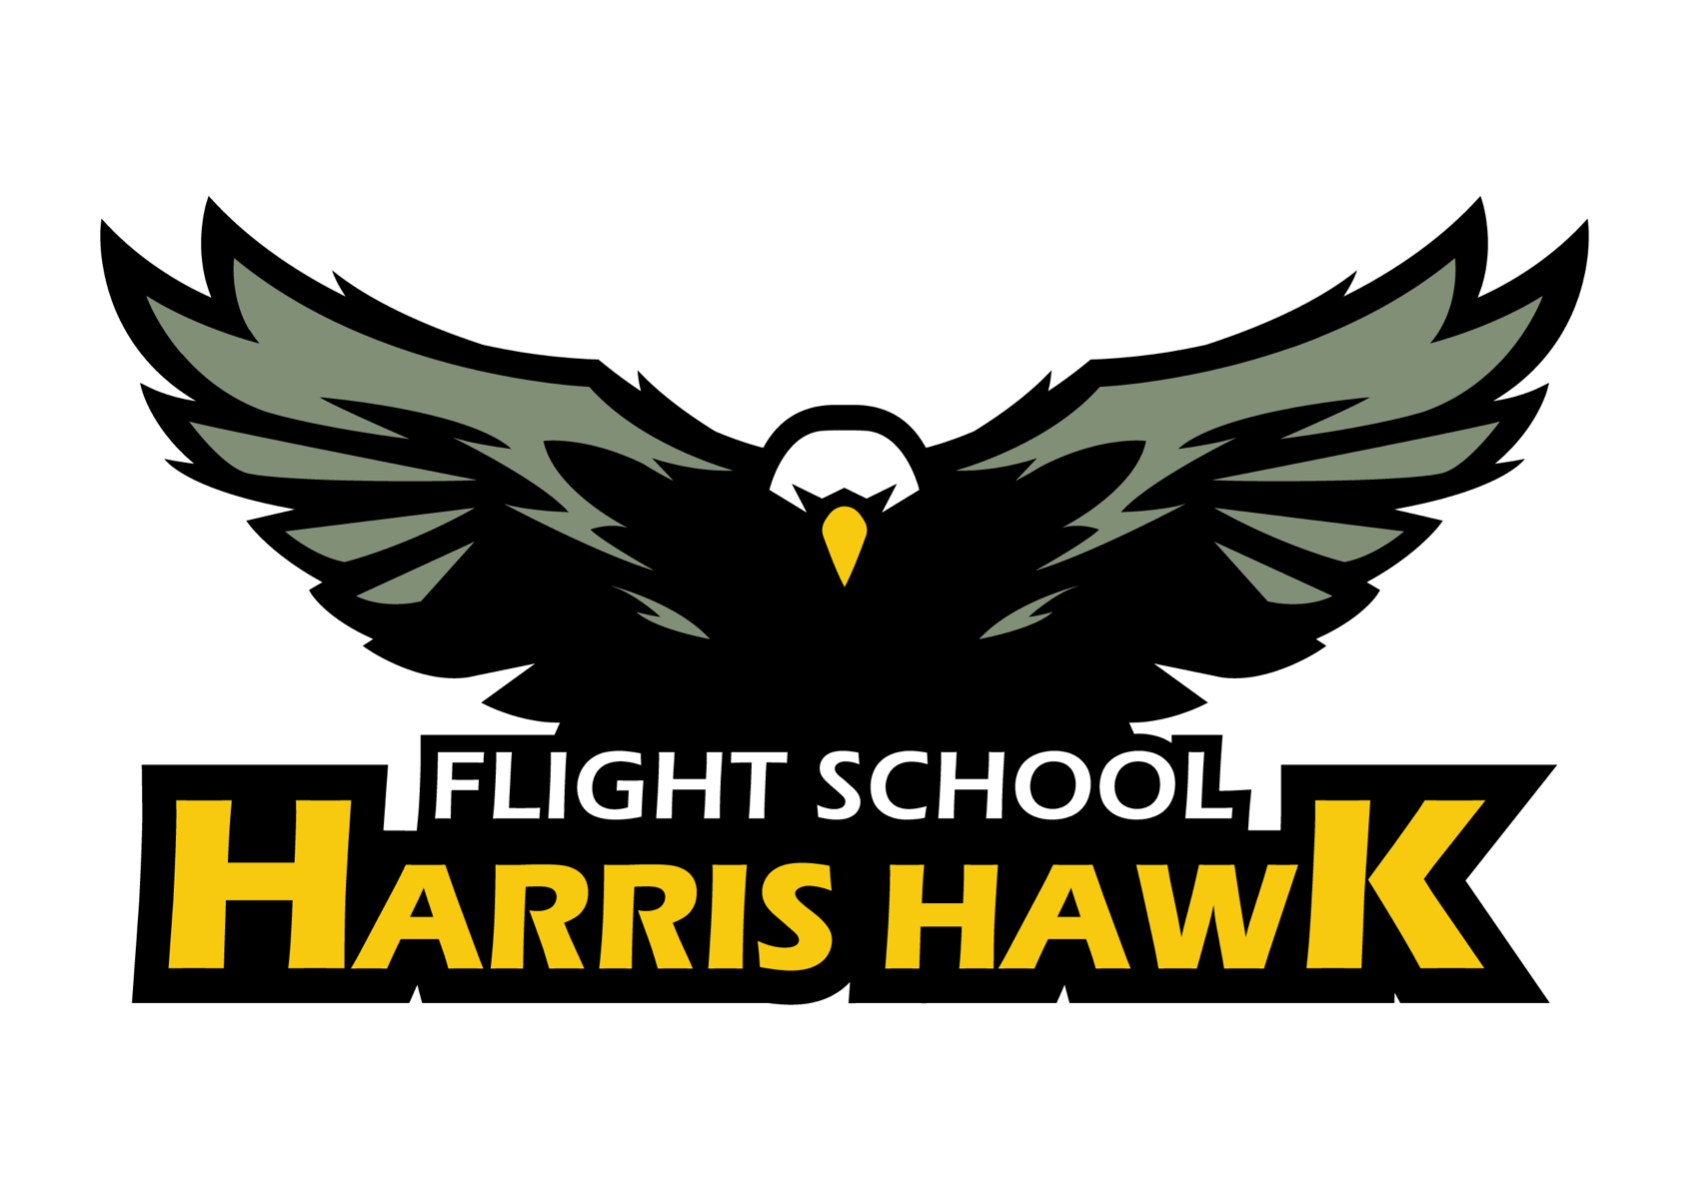 Harris Hawk flight school